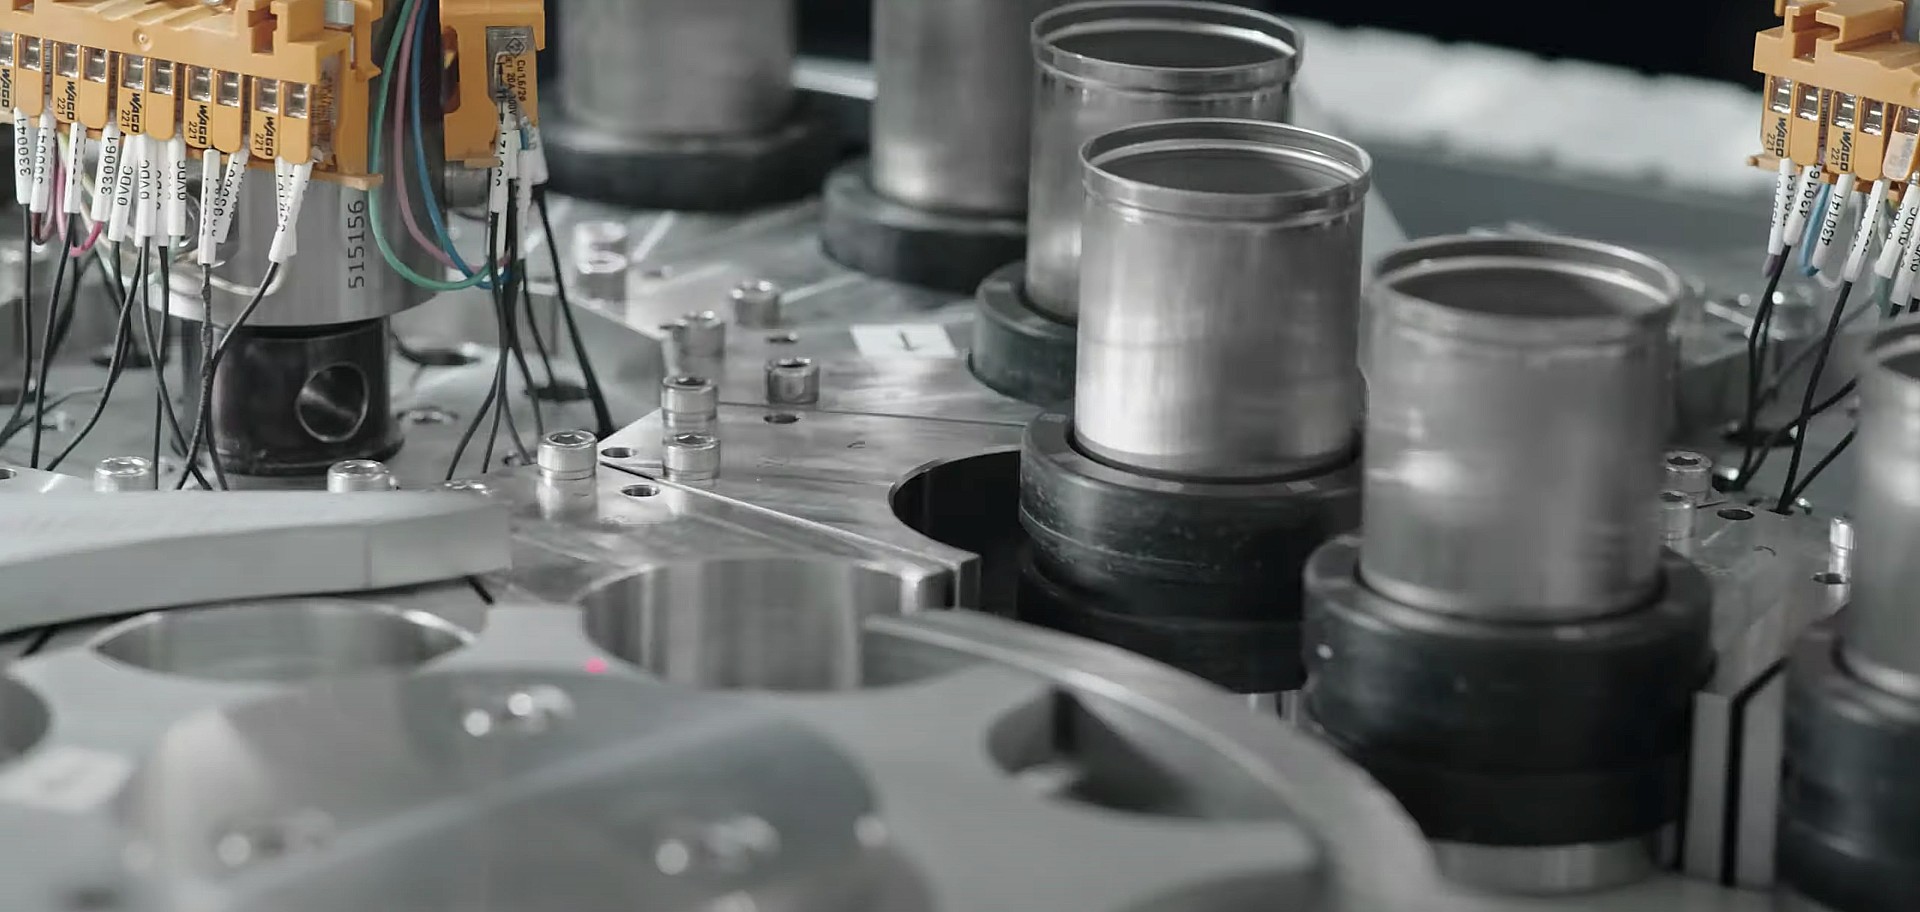 Tesla демонстрирует линии производства аккумуляторов, вдохновленные другими отраслями, в новом видео